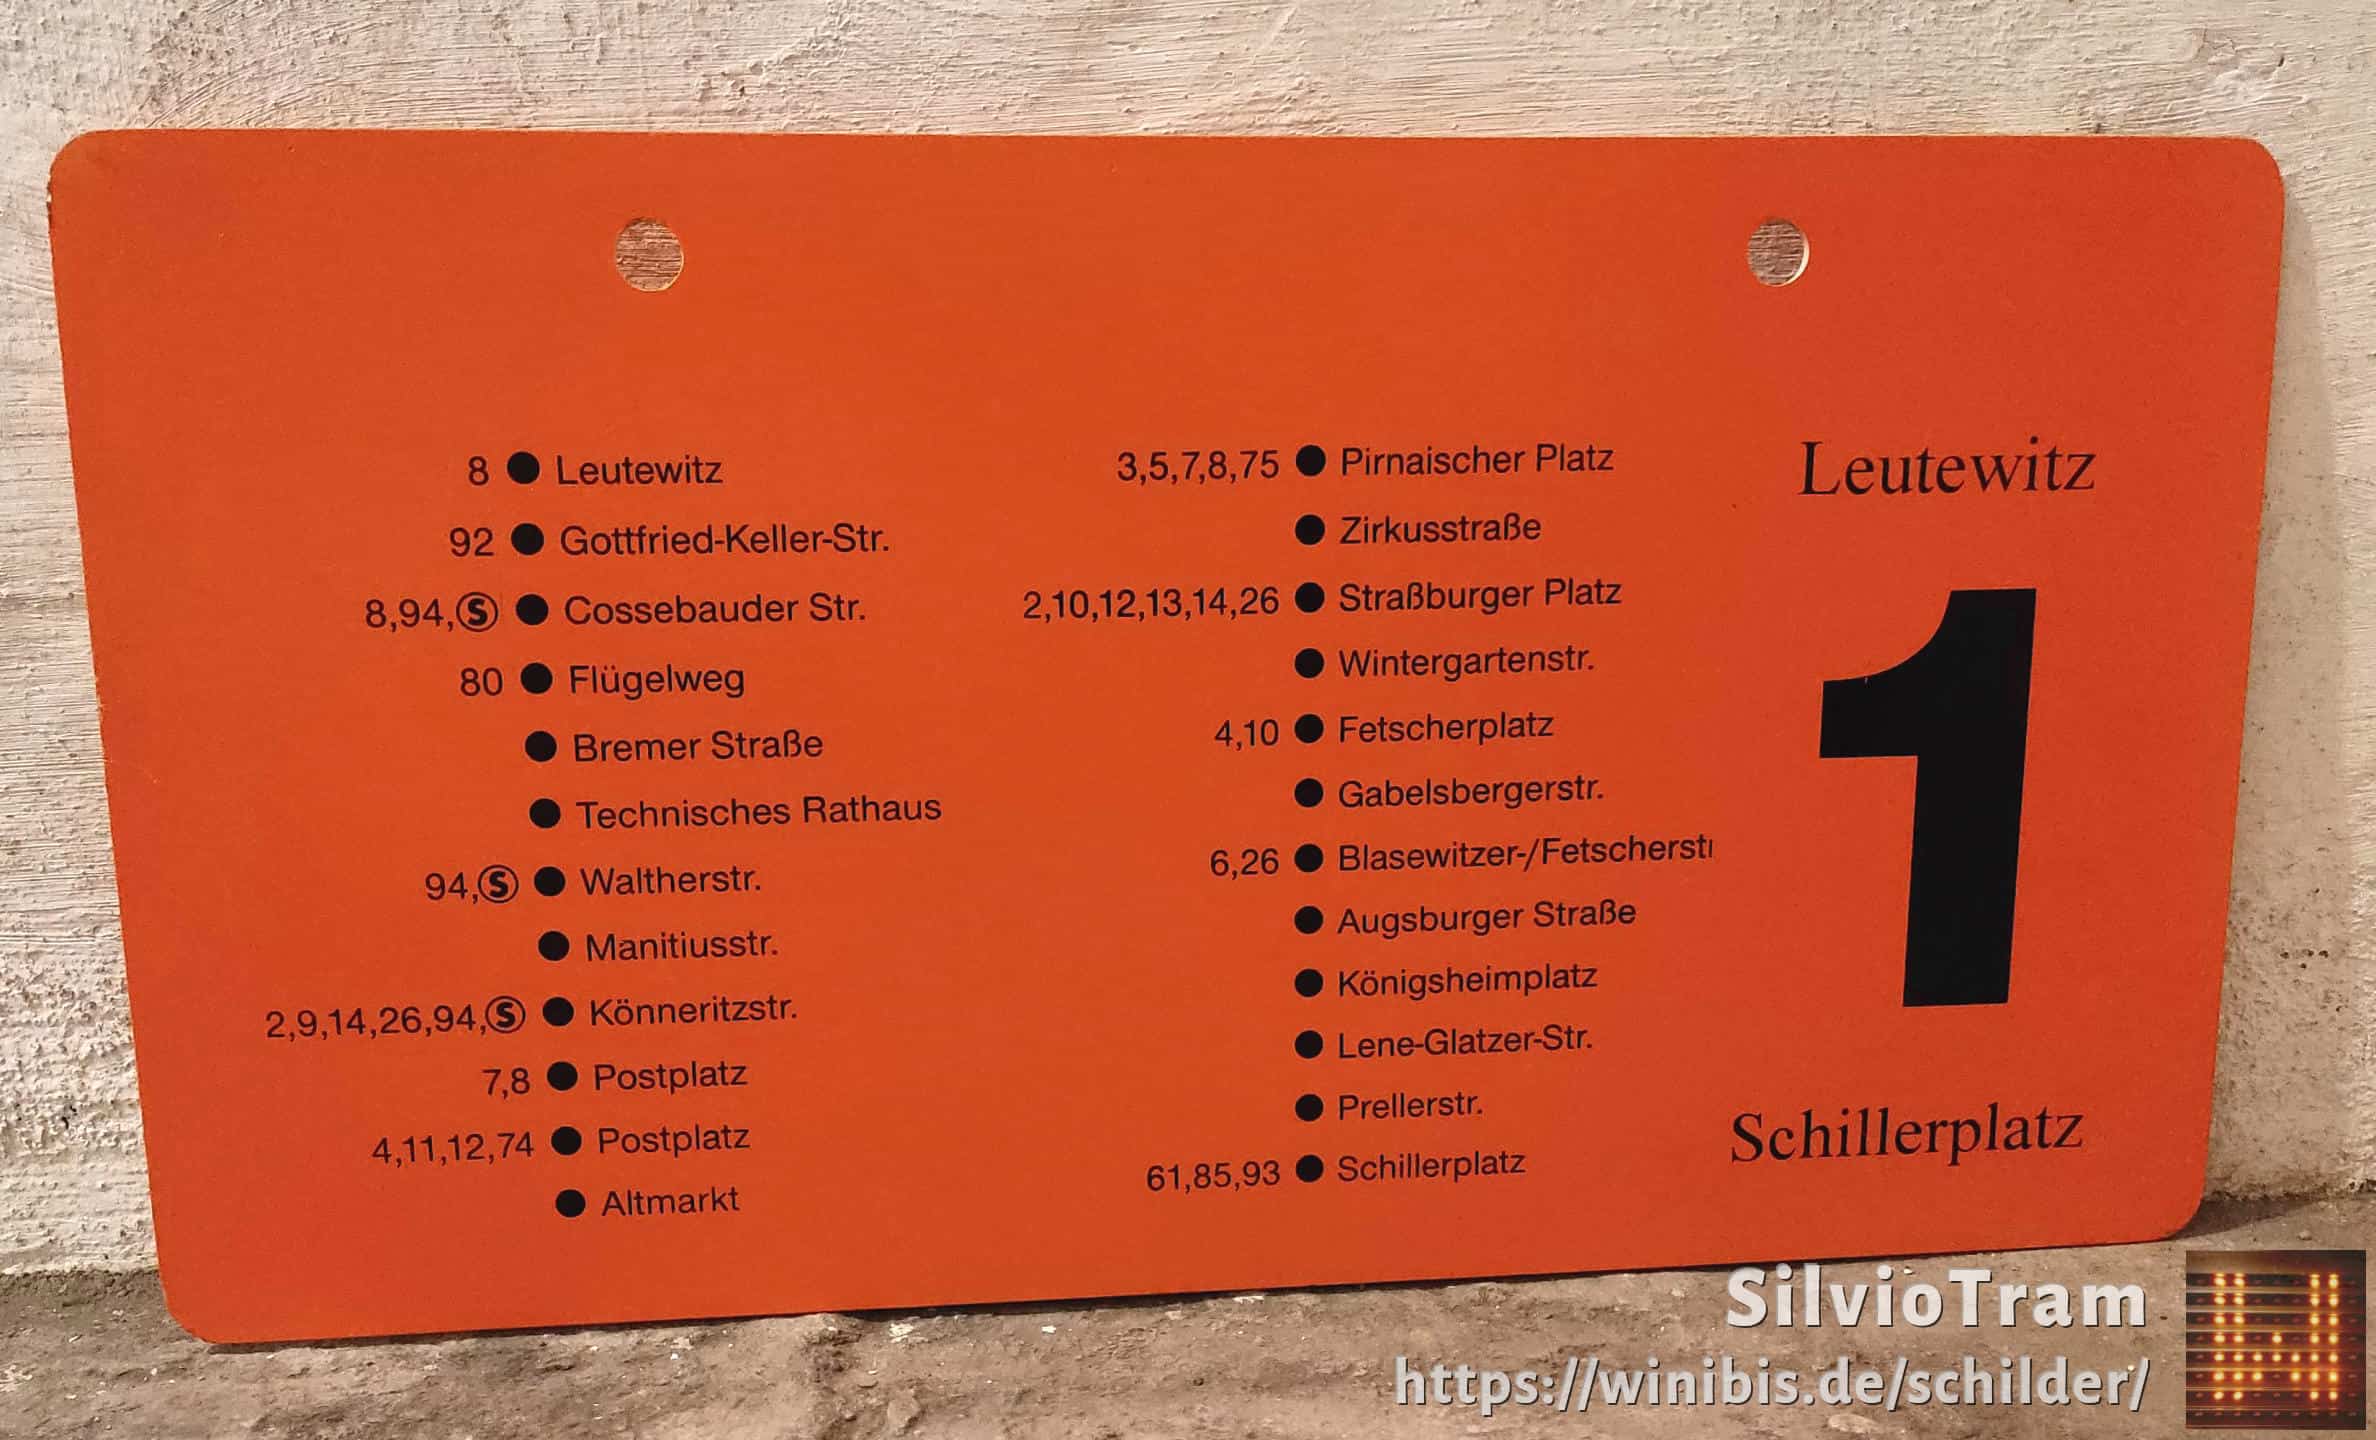 1 Leutewitz – Schillerplatz #4